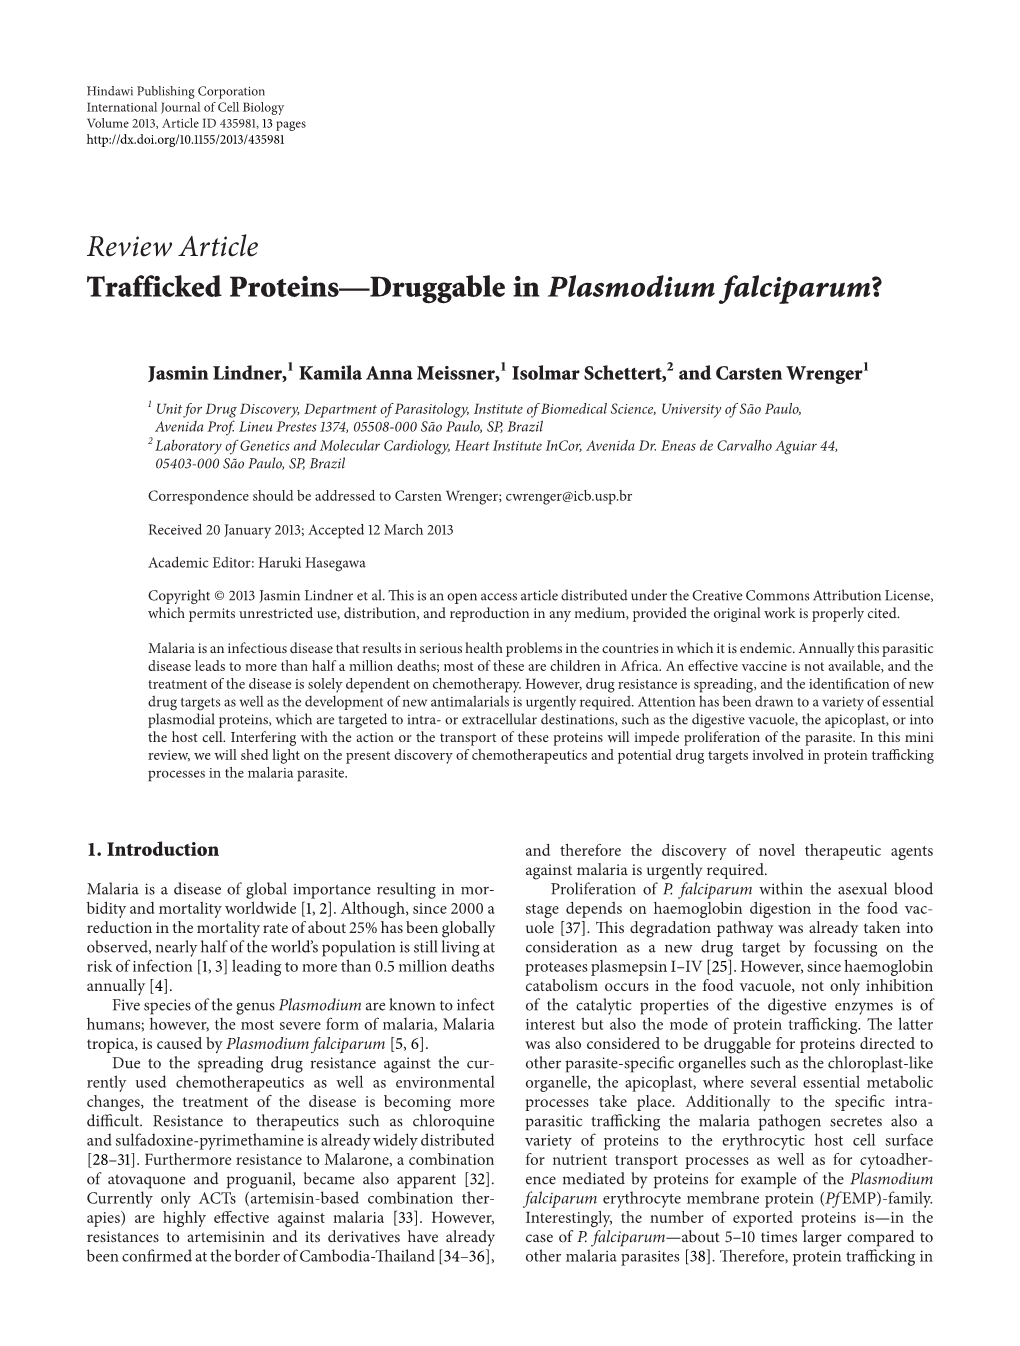 Trafficked Proteins—Druggable in Plasmodium Falciparum?